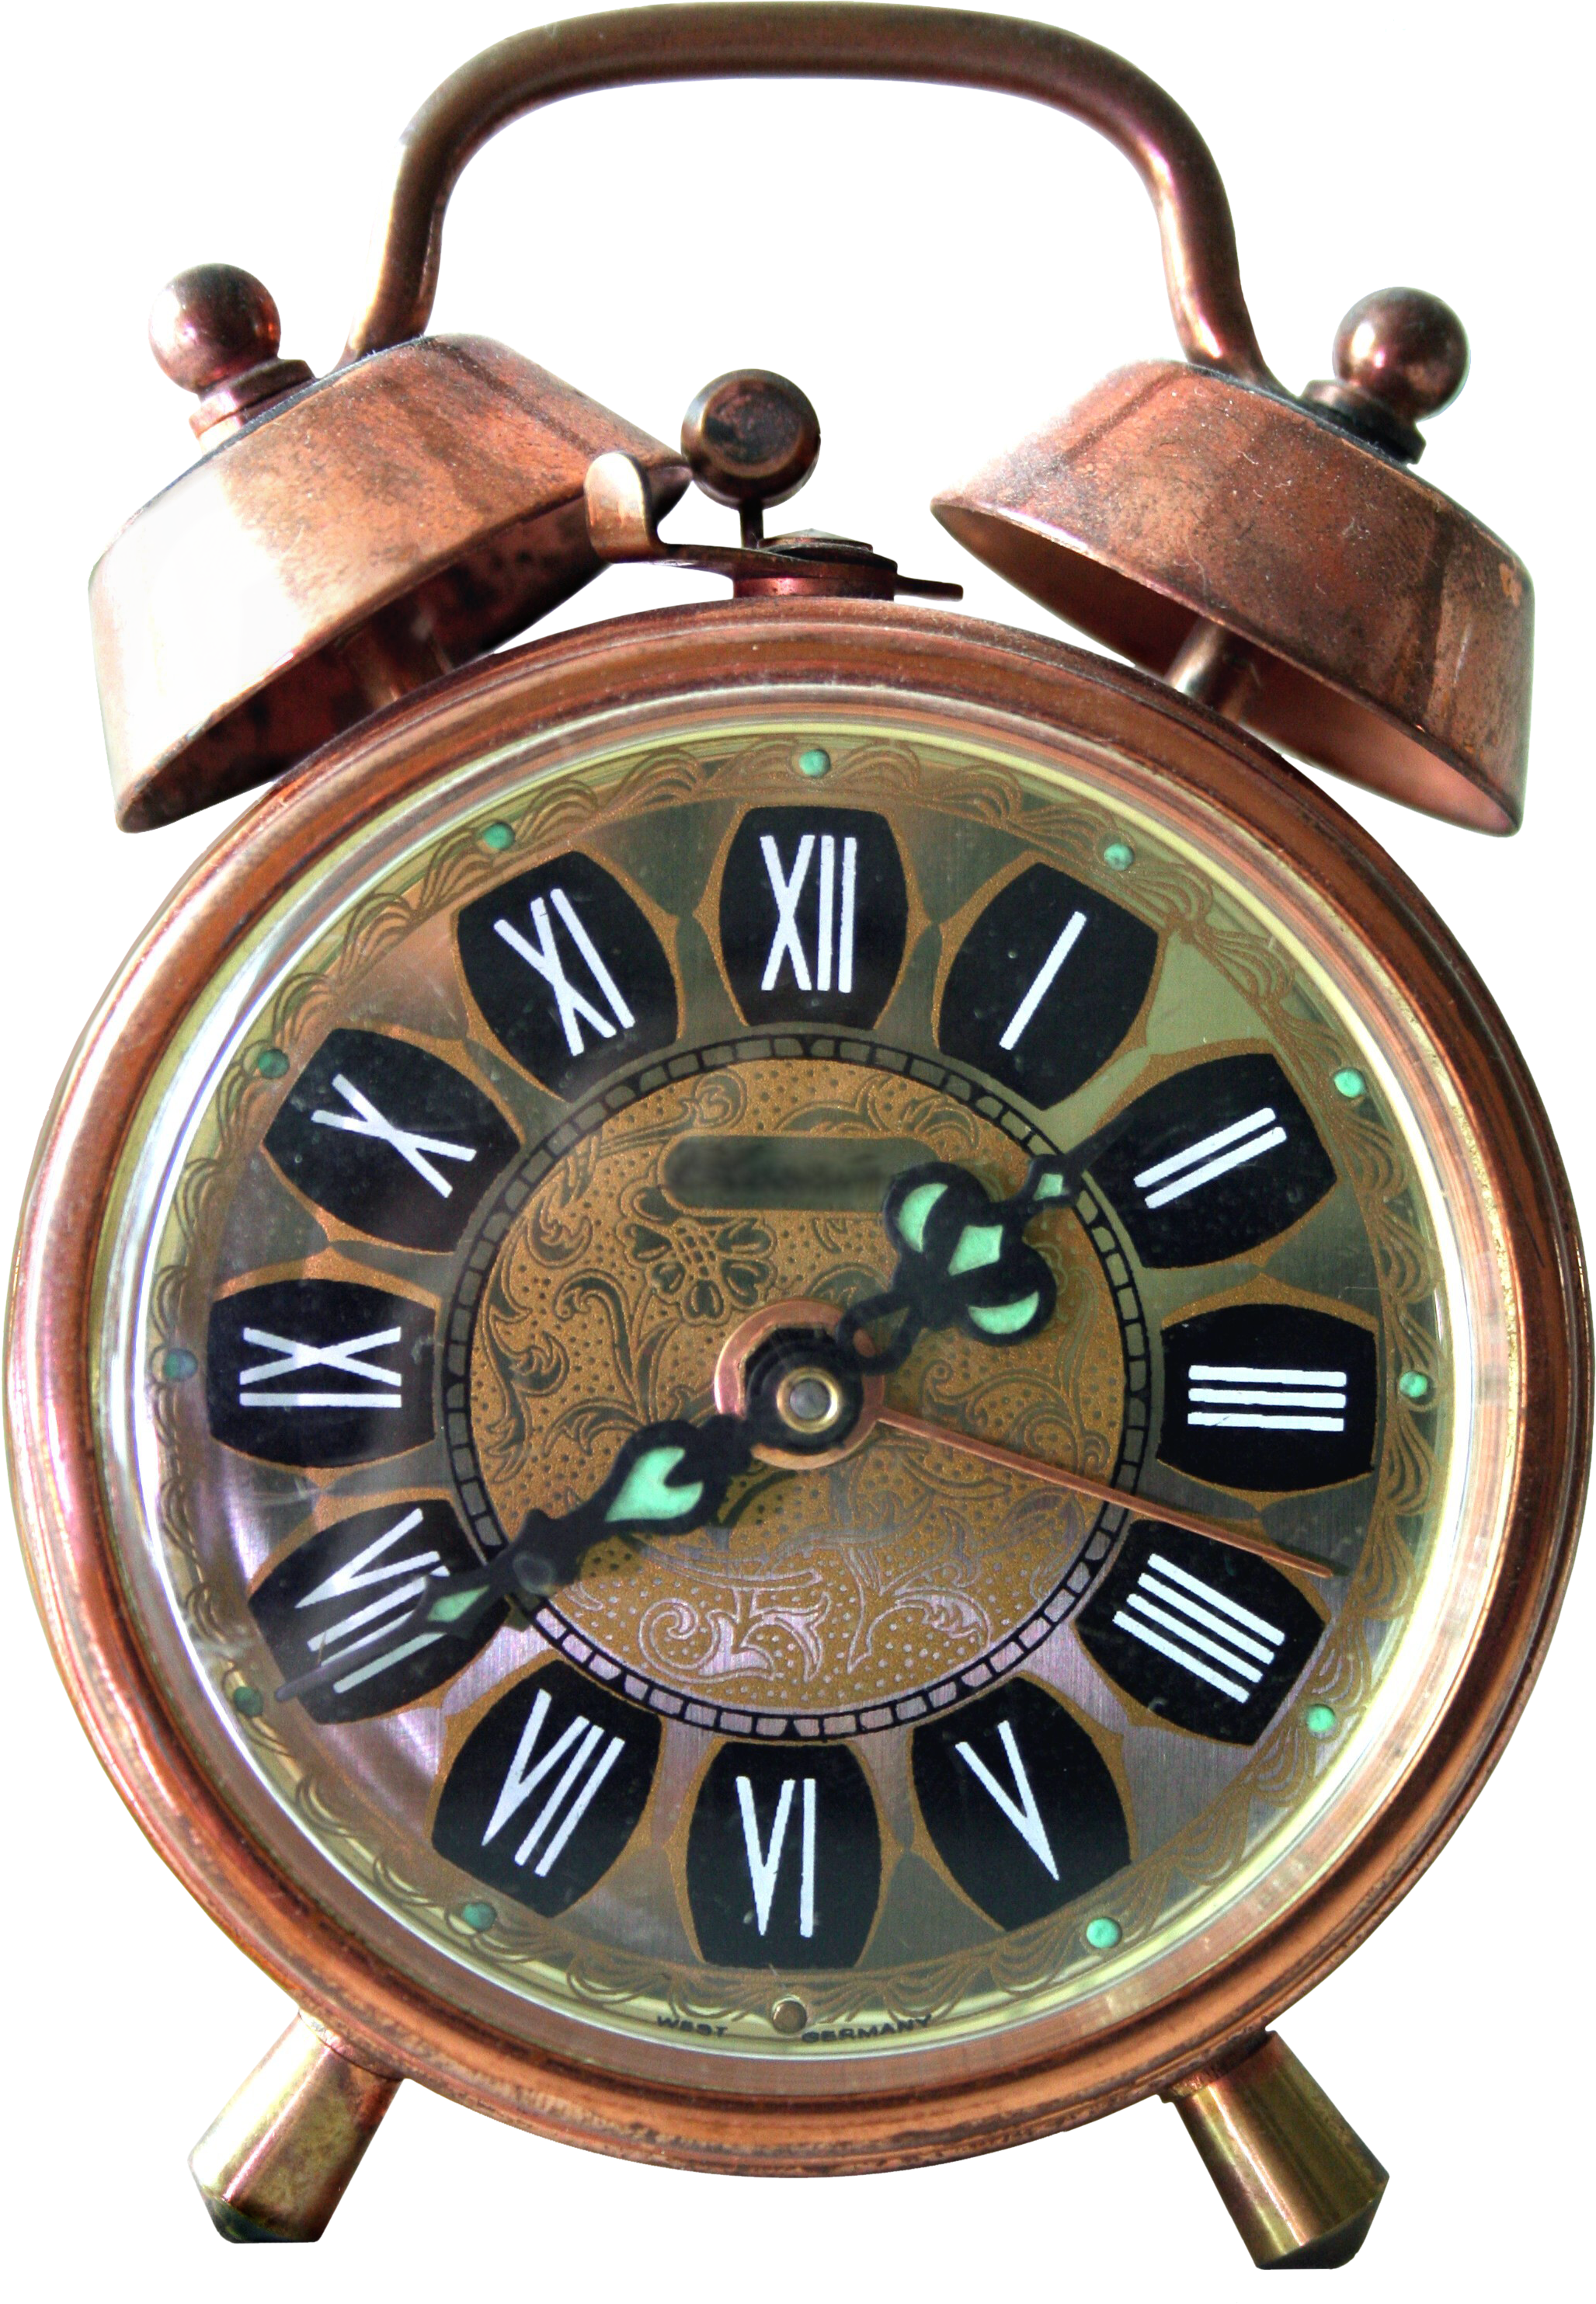 Alarm Wall Clock PNG Image